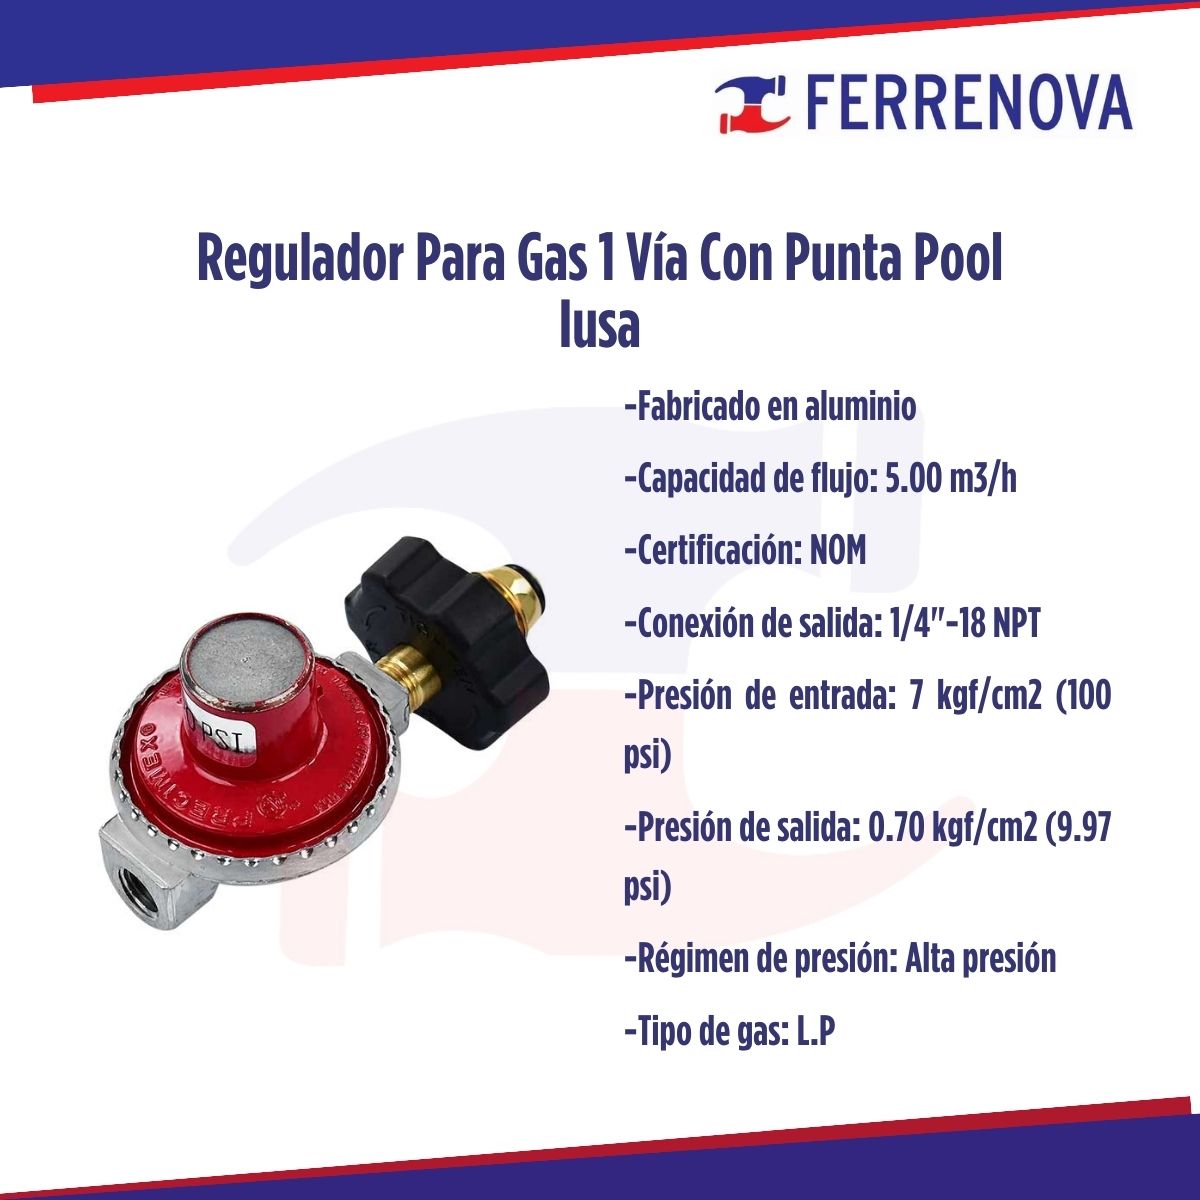 Regulador Para Gas 1 Vía Con Punta Pool Iusa